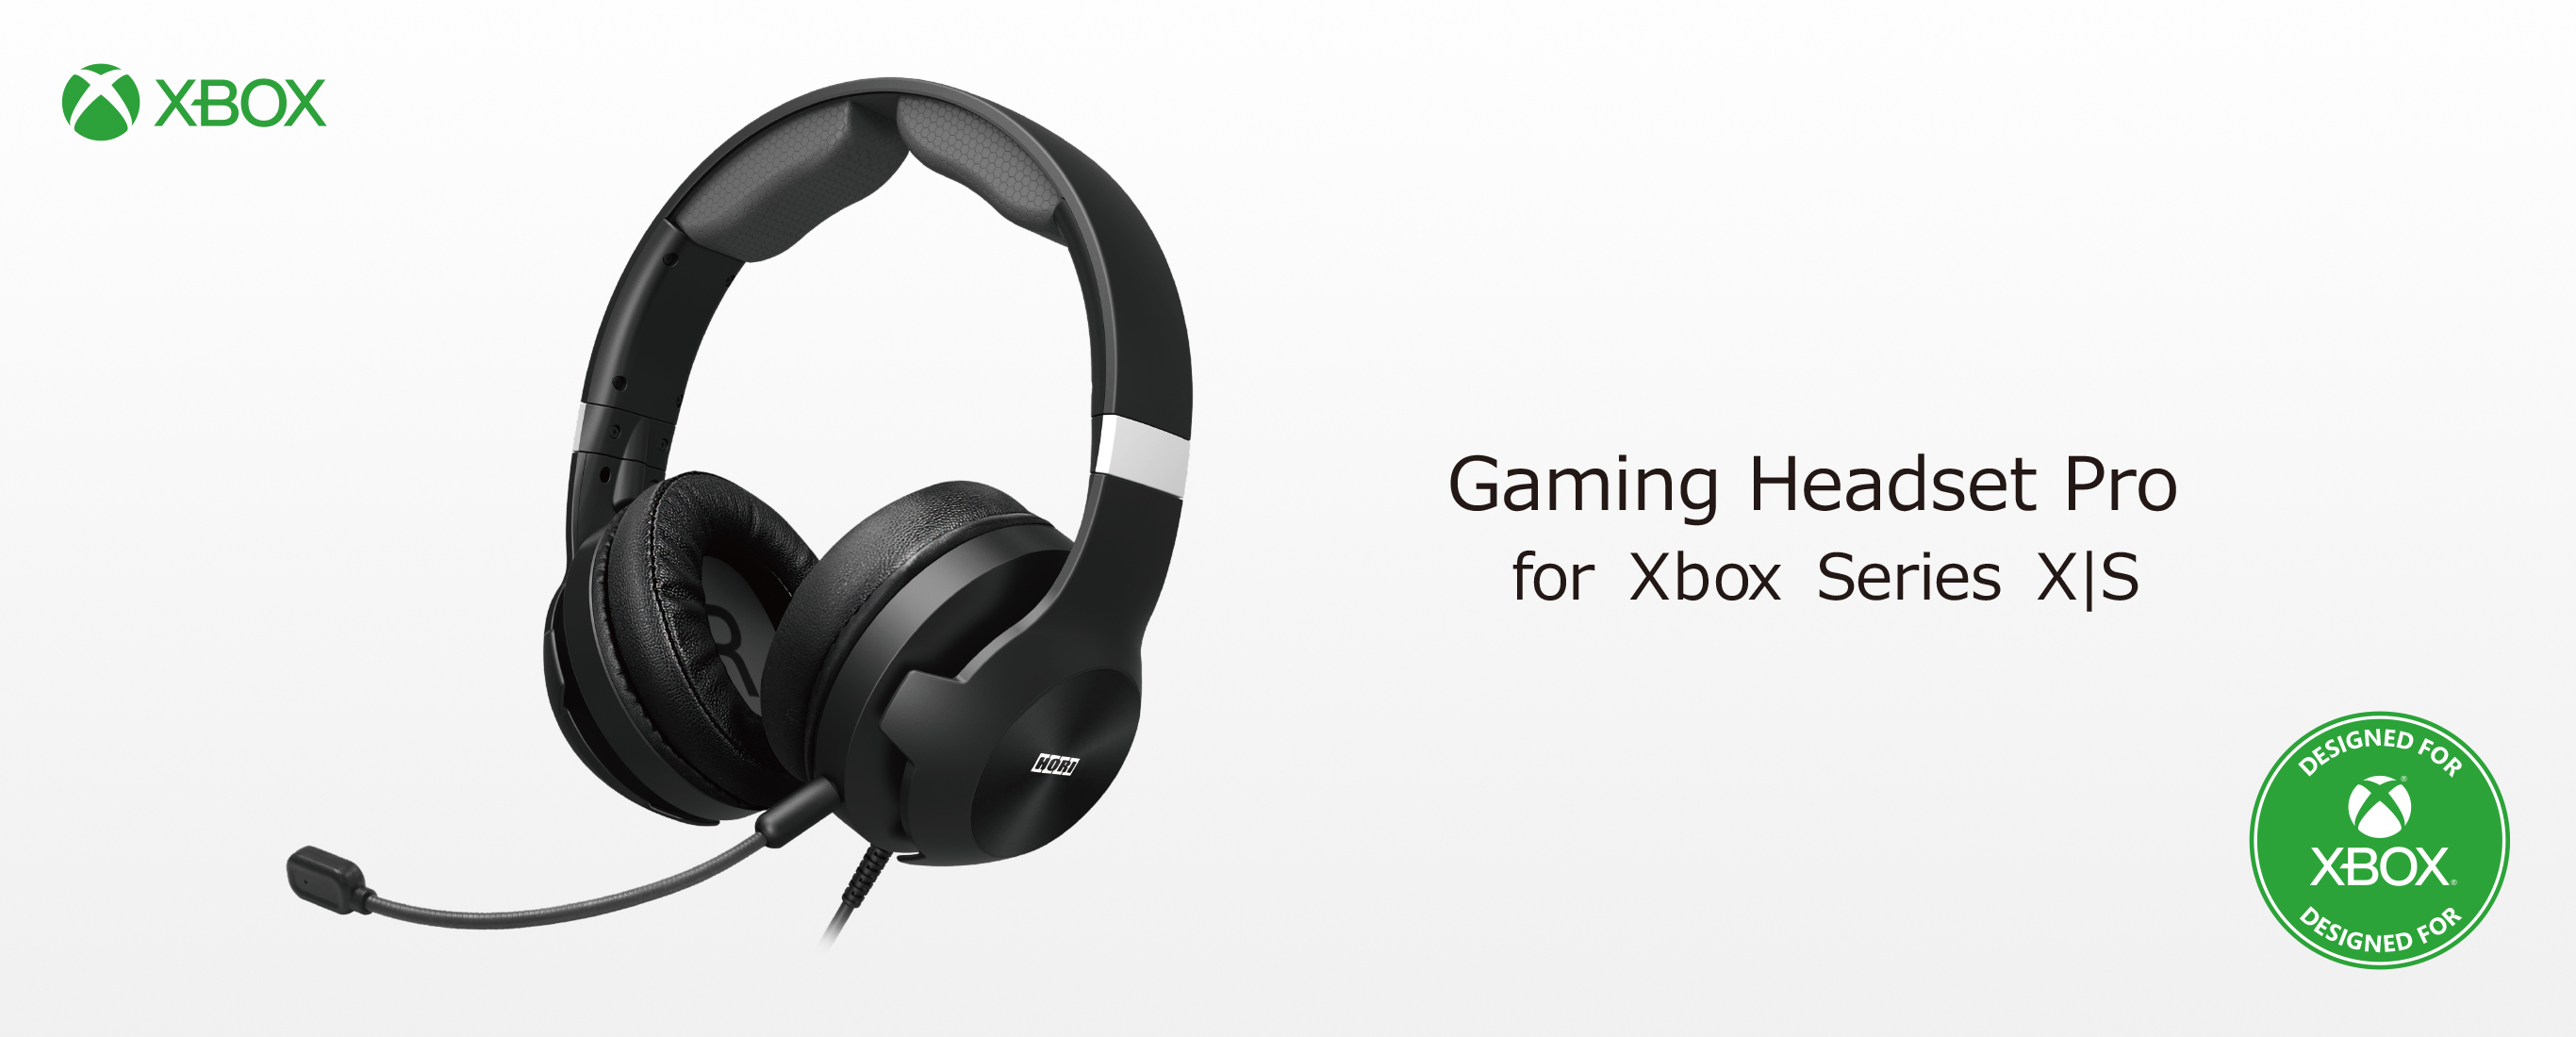 株式会社 HORI | Gaming Headset Pro for Xbox Series X|S